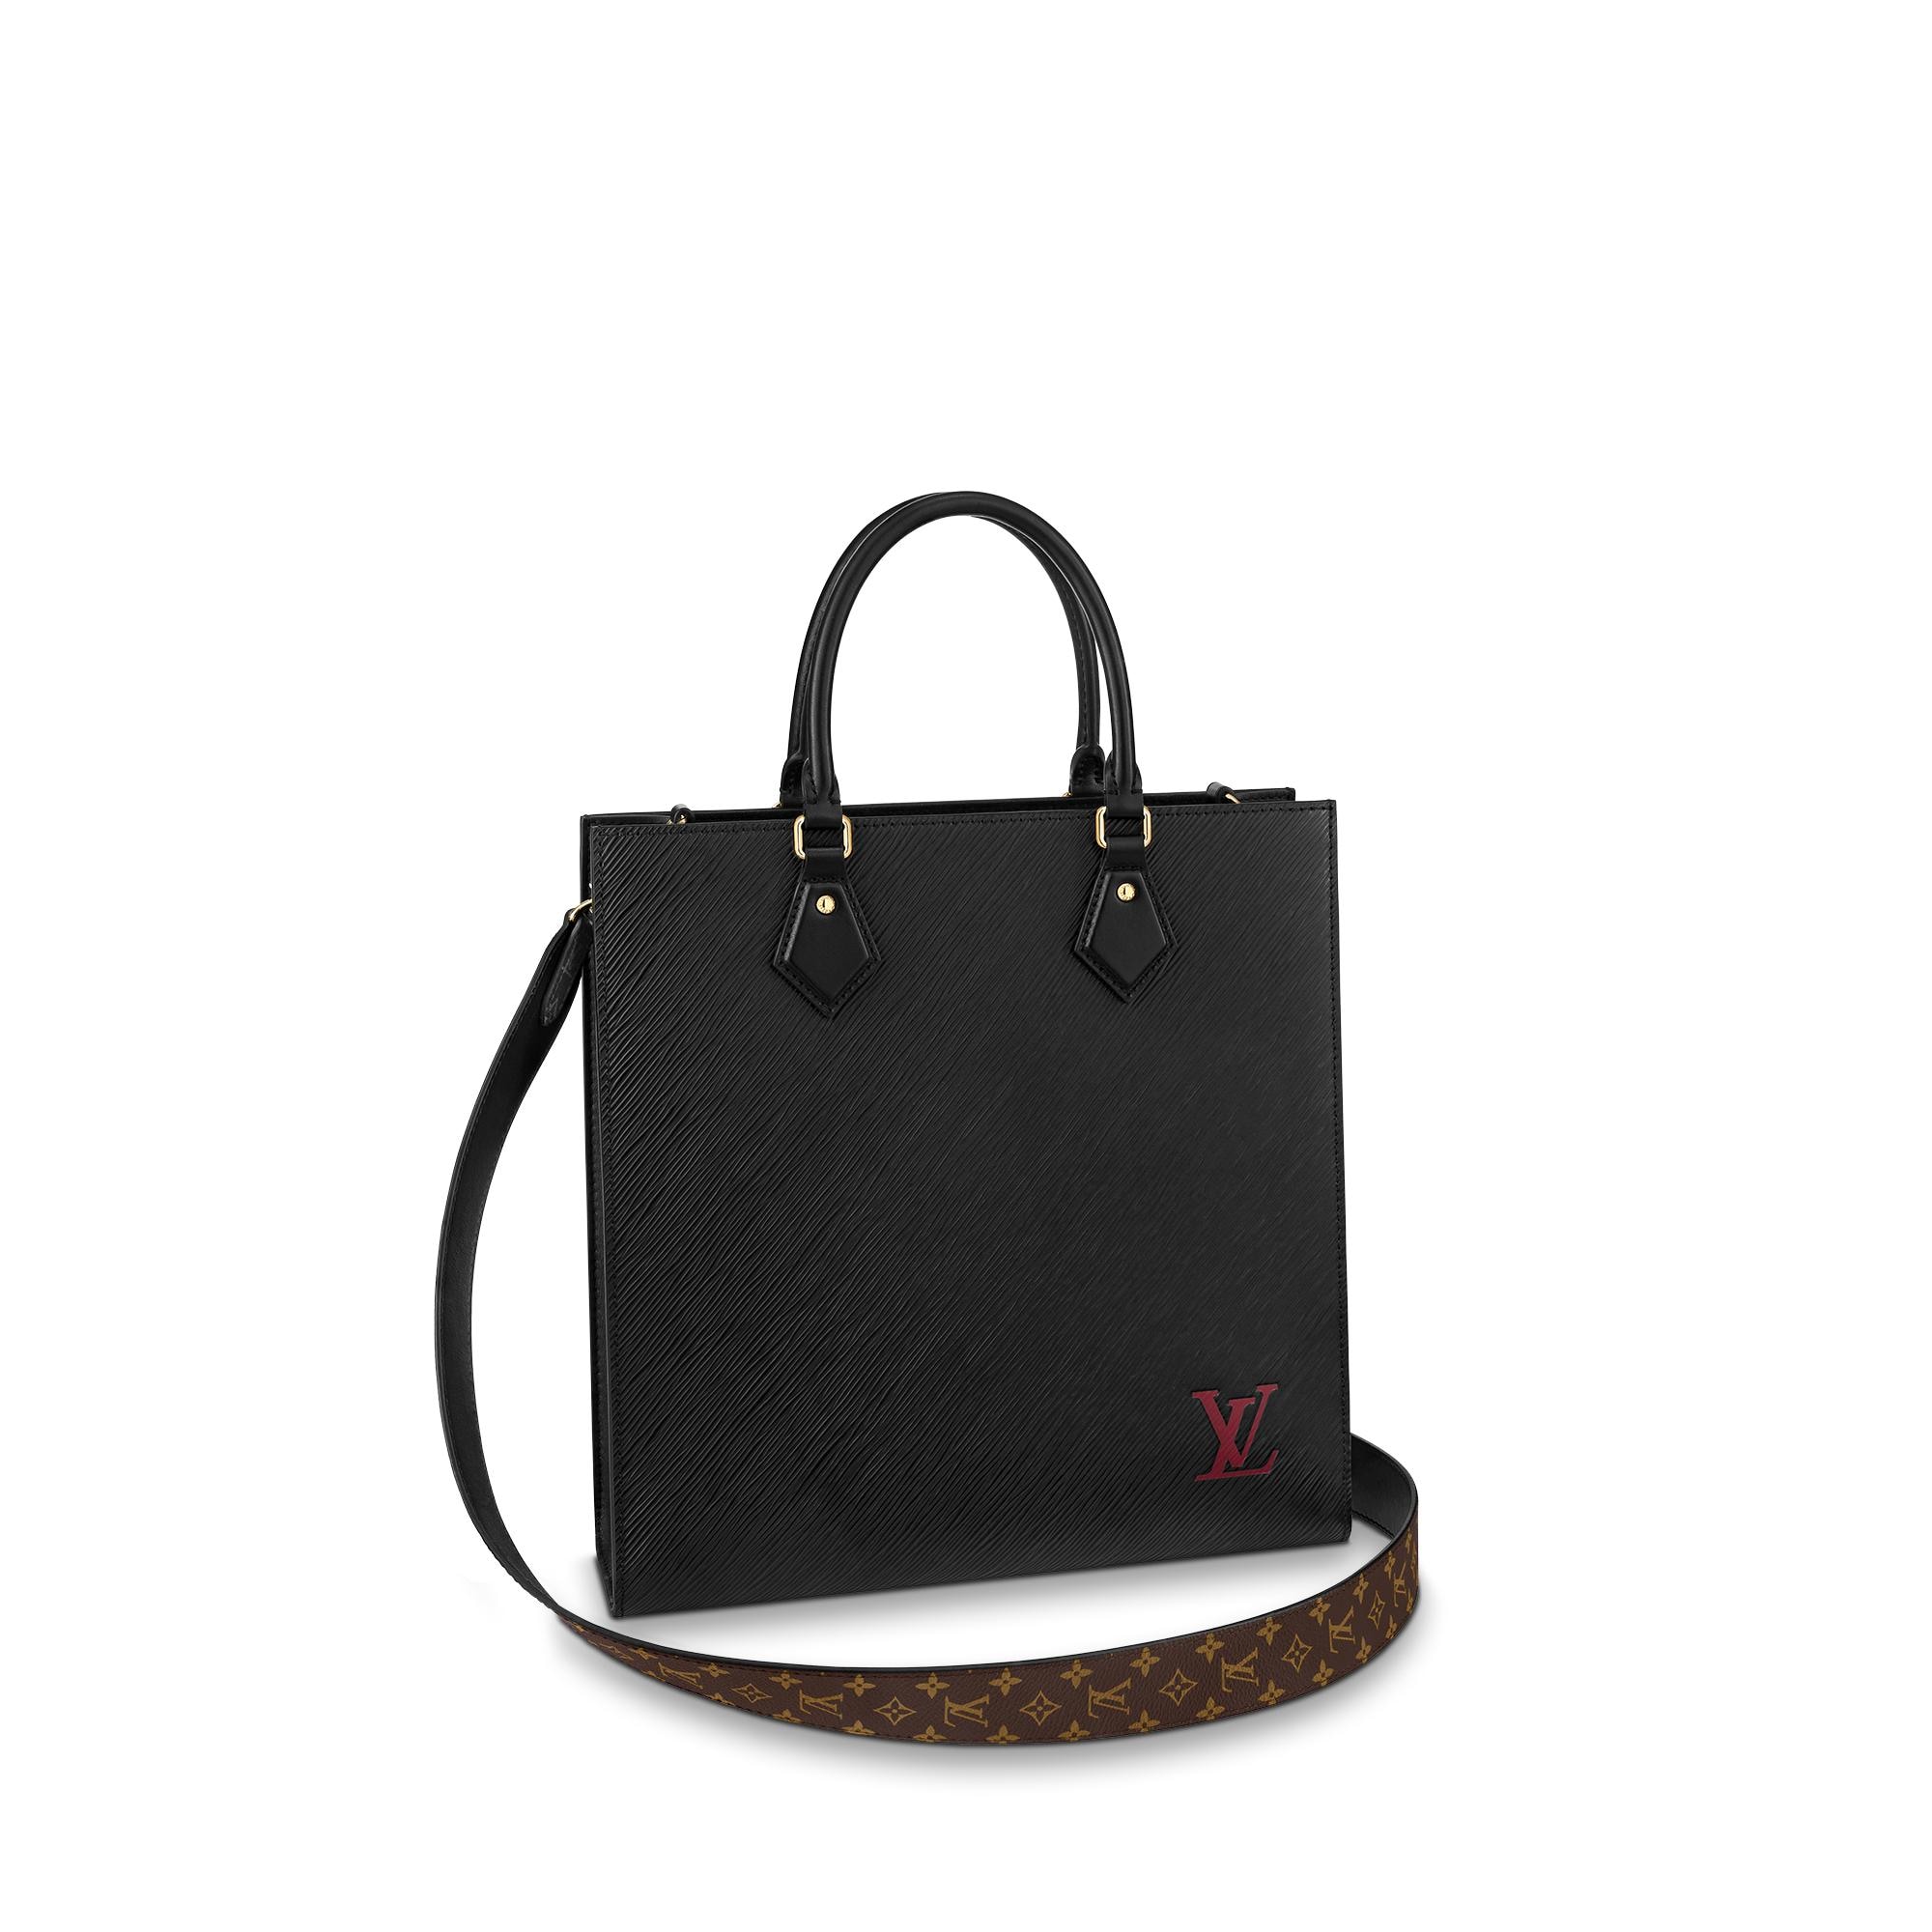 Louis Vuitton Epi Leather Sac plat PM – Women – Handbags M58658 Sac plat PM